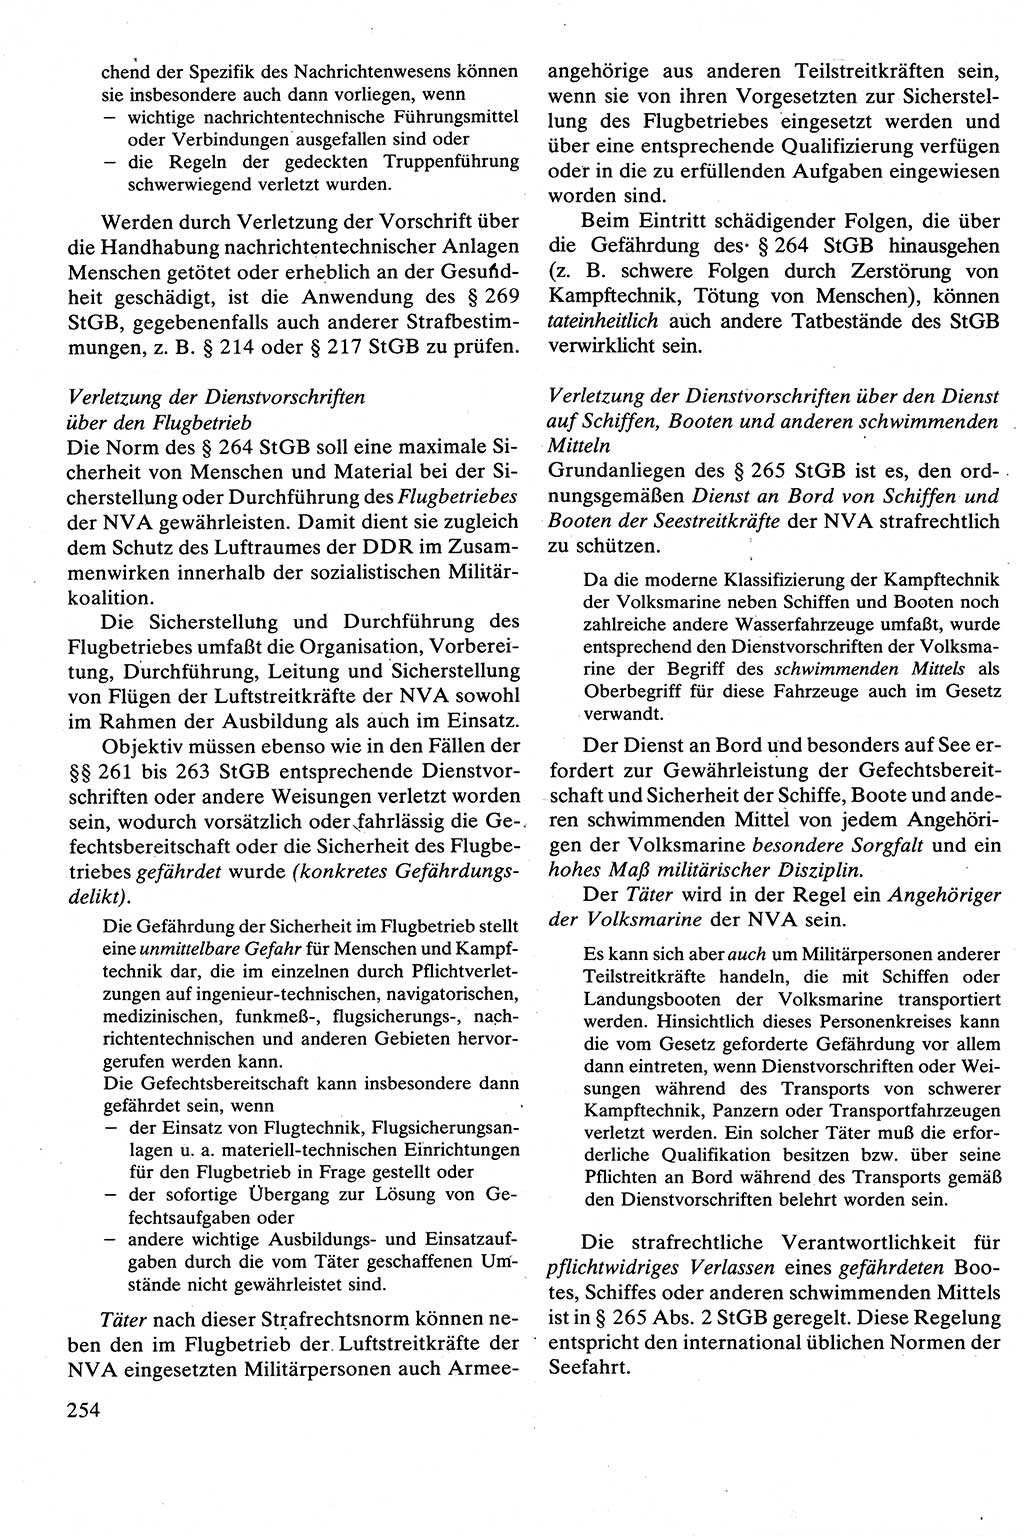 Strafrecht [Deutsche Demokratische Republik (DDR)], Besonderer Teil, Lehrbuch 1981, Seite 254 (Strafr. DDR BT Lb. 1981, S. 254)